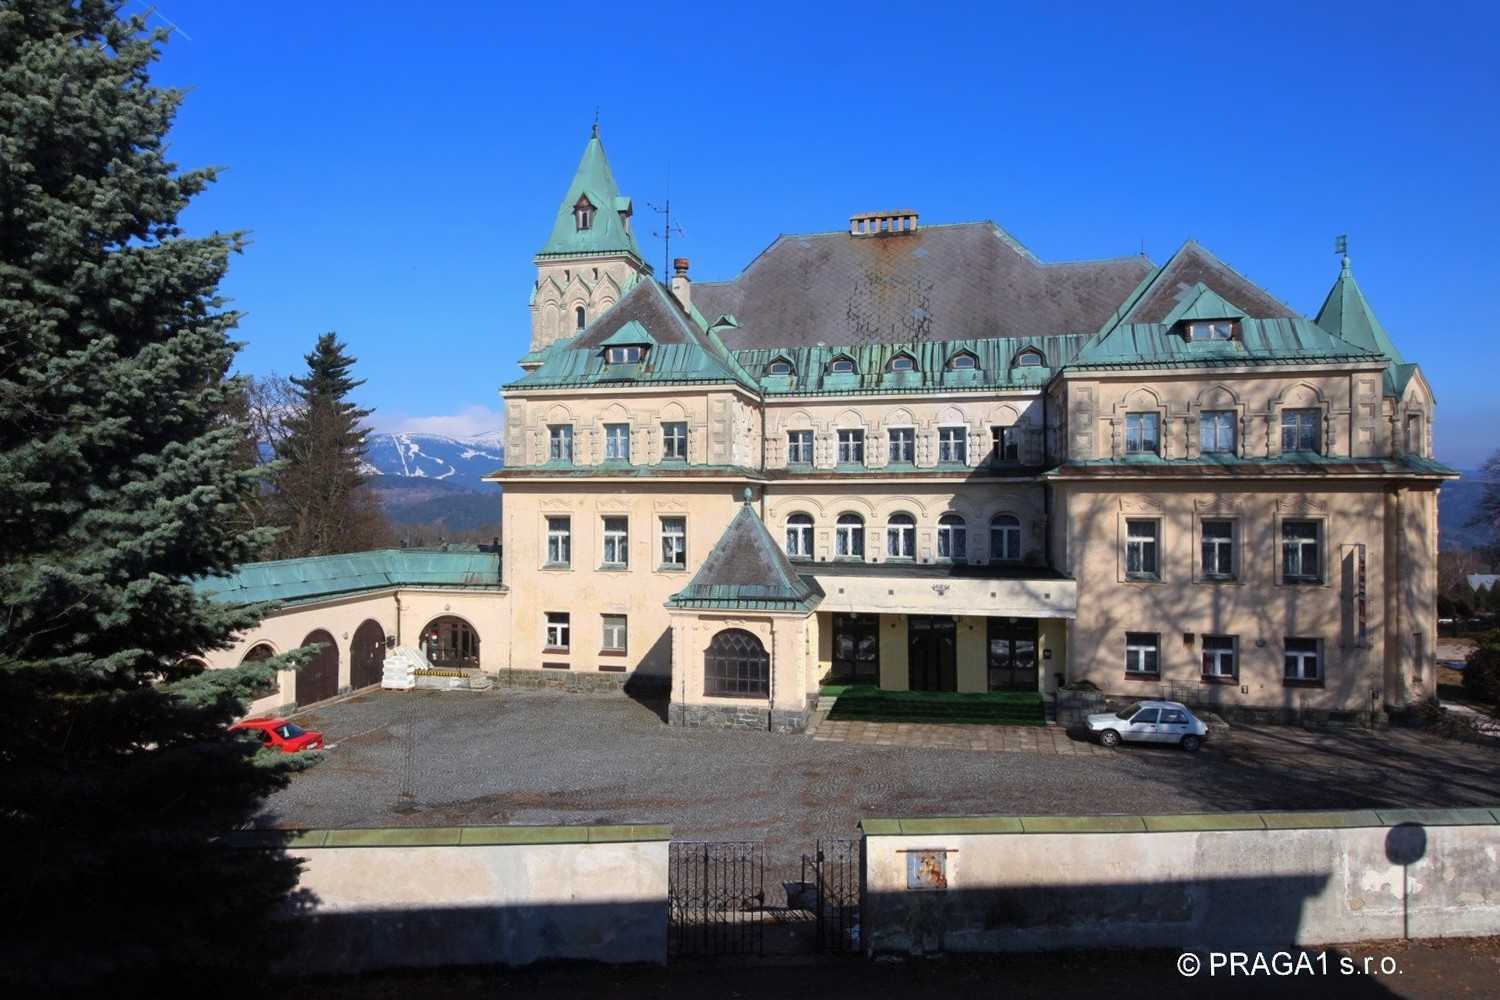 Photos Château-hôtel dans les monts Jizerské en République tchèque